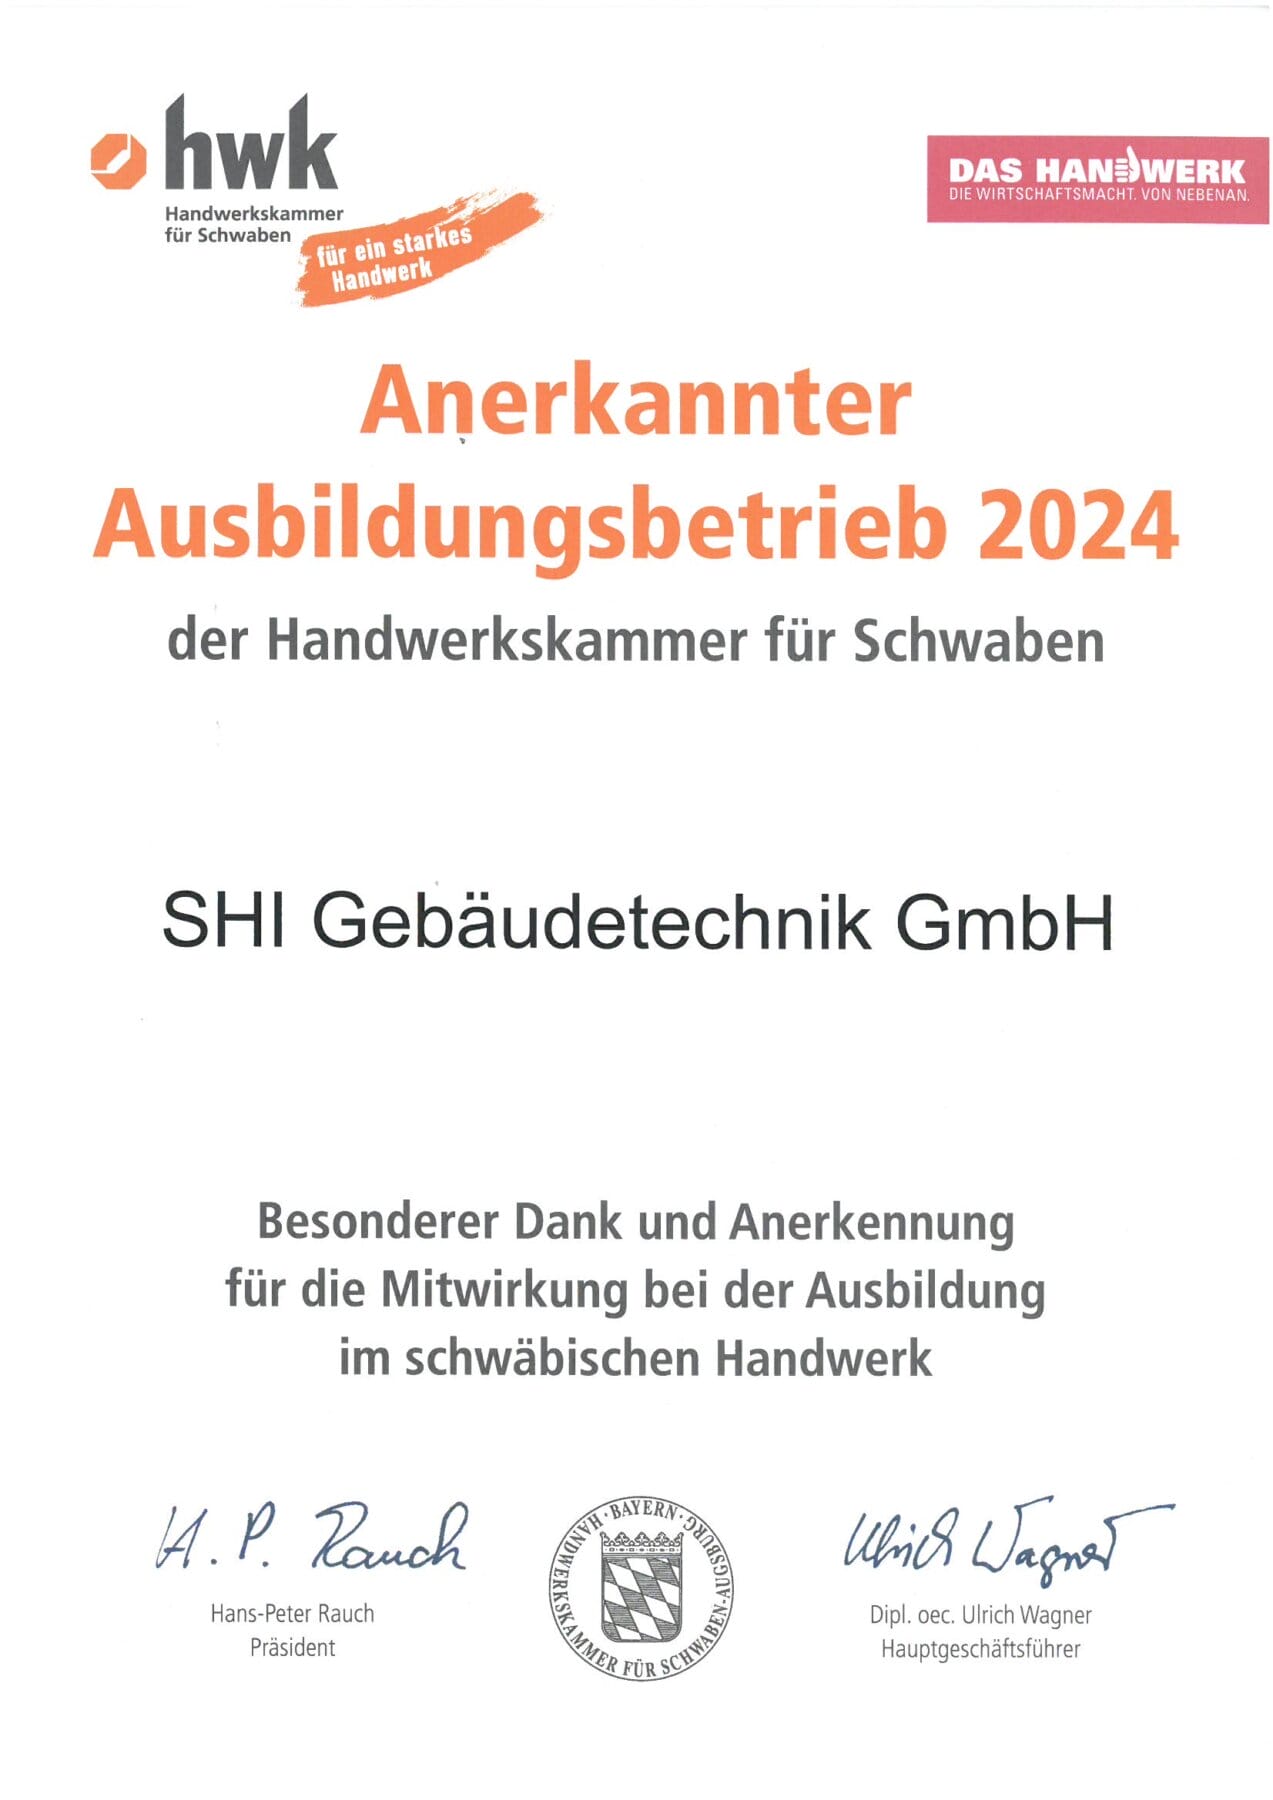 HWK - Anerkannter Ausbildungsbetrieb 2024